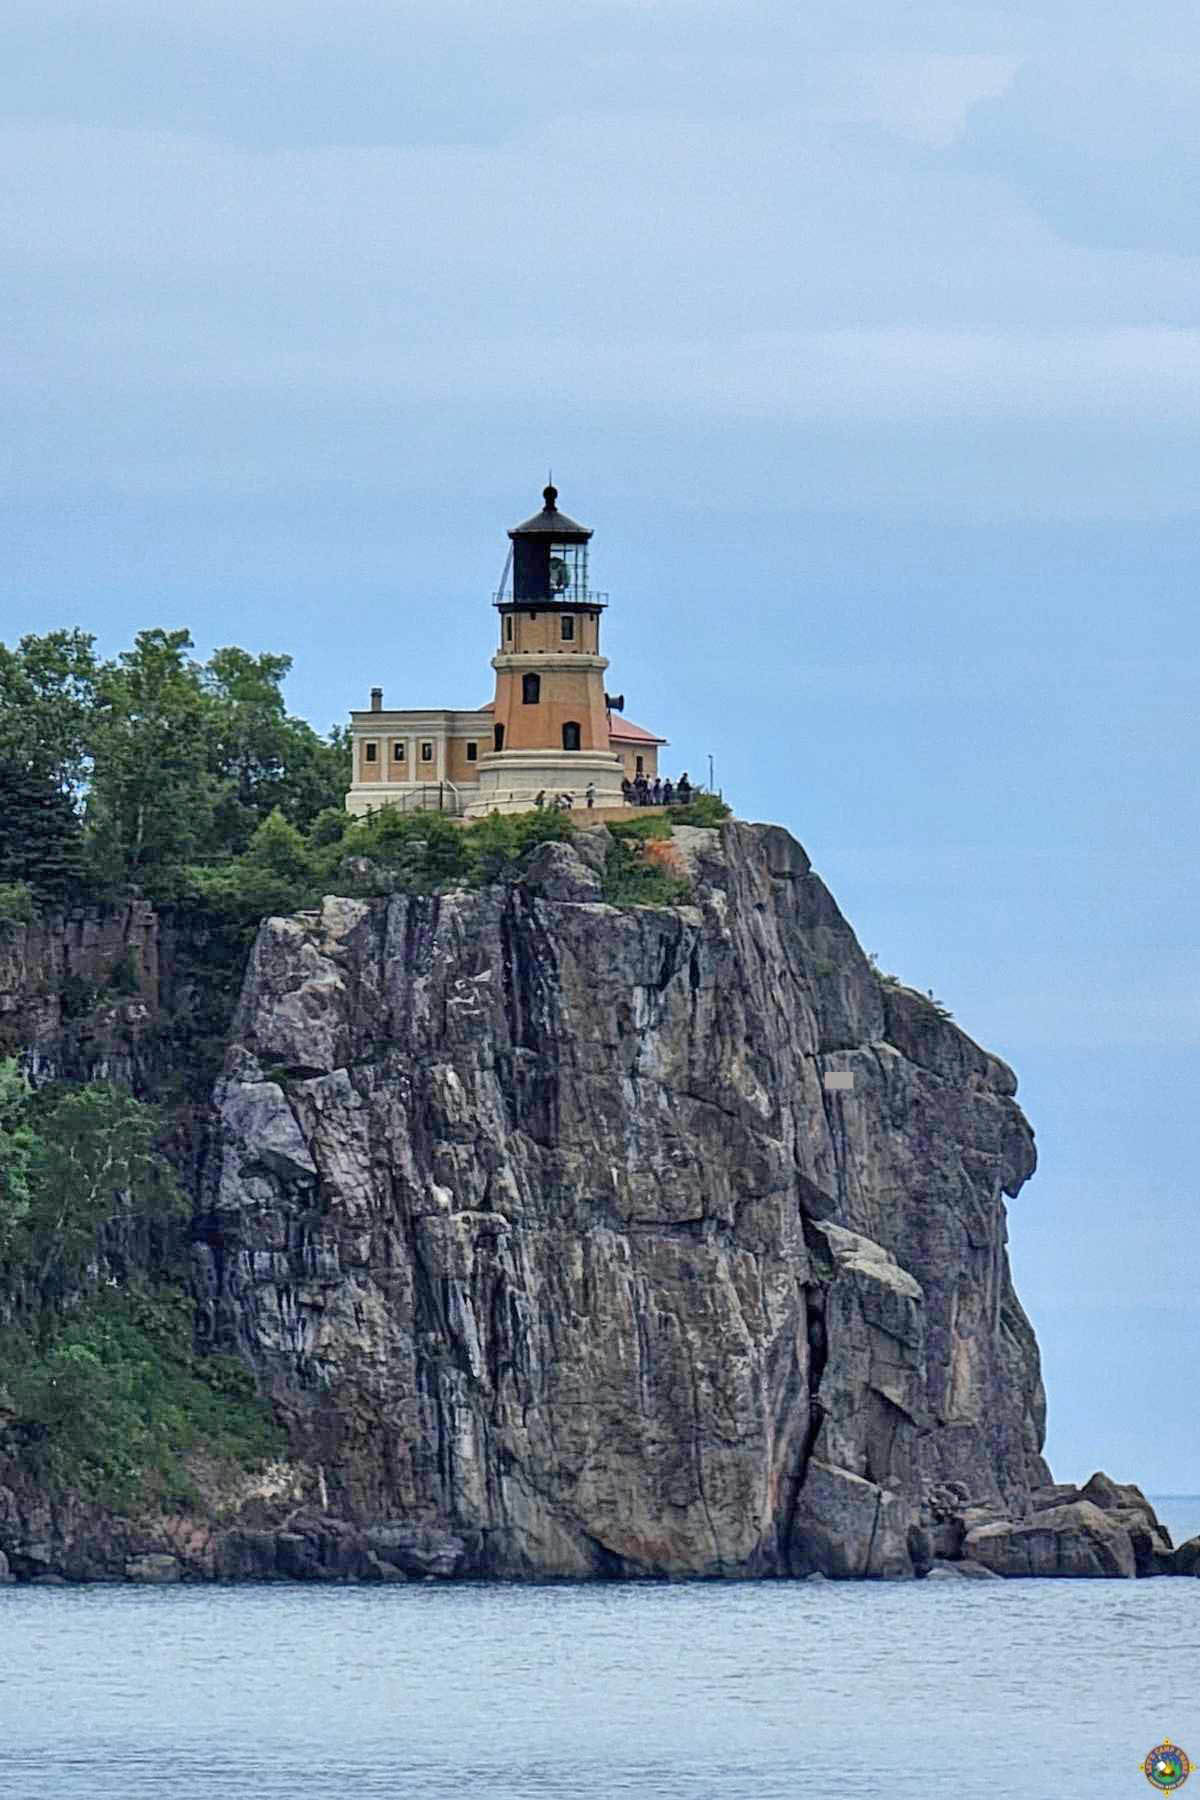 Split Rock Lighthouse on a Cliff